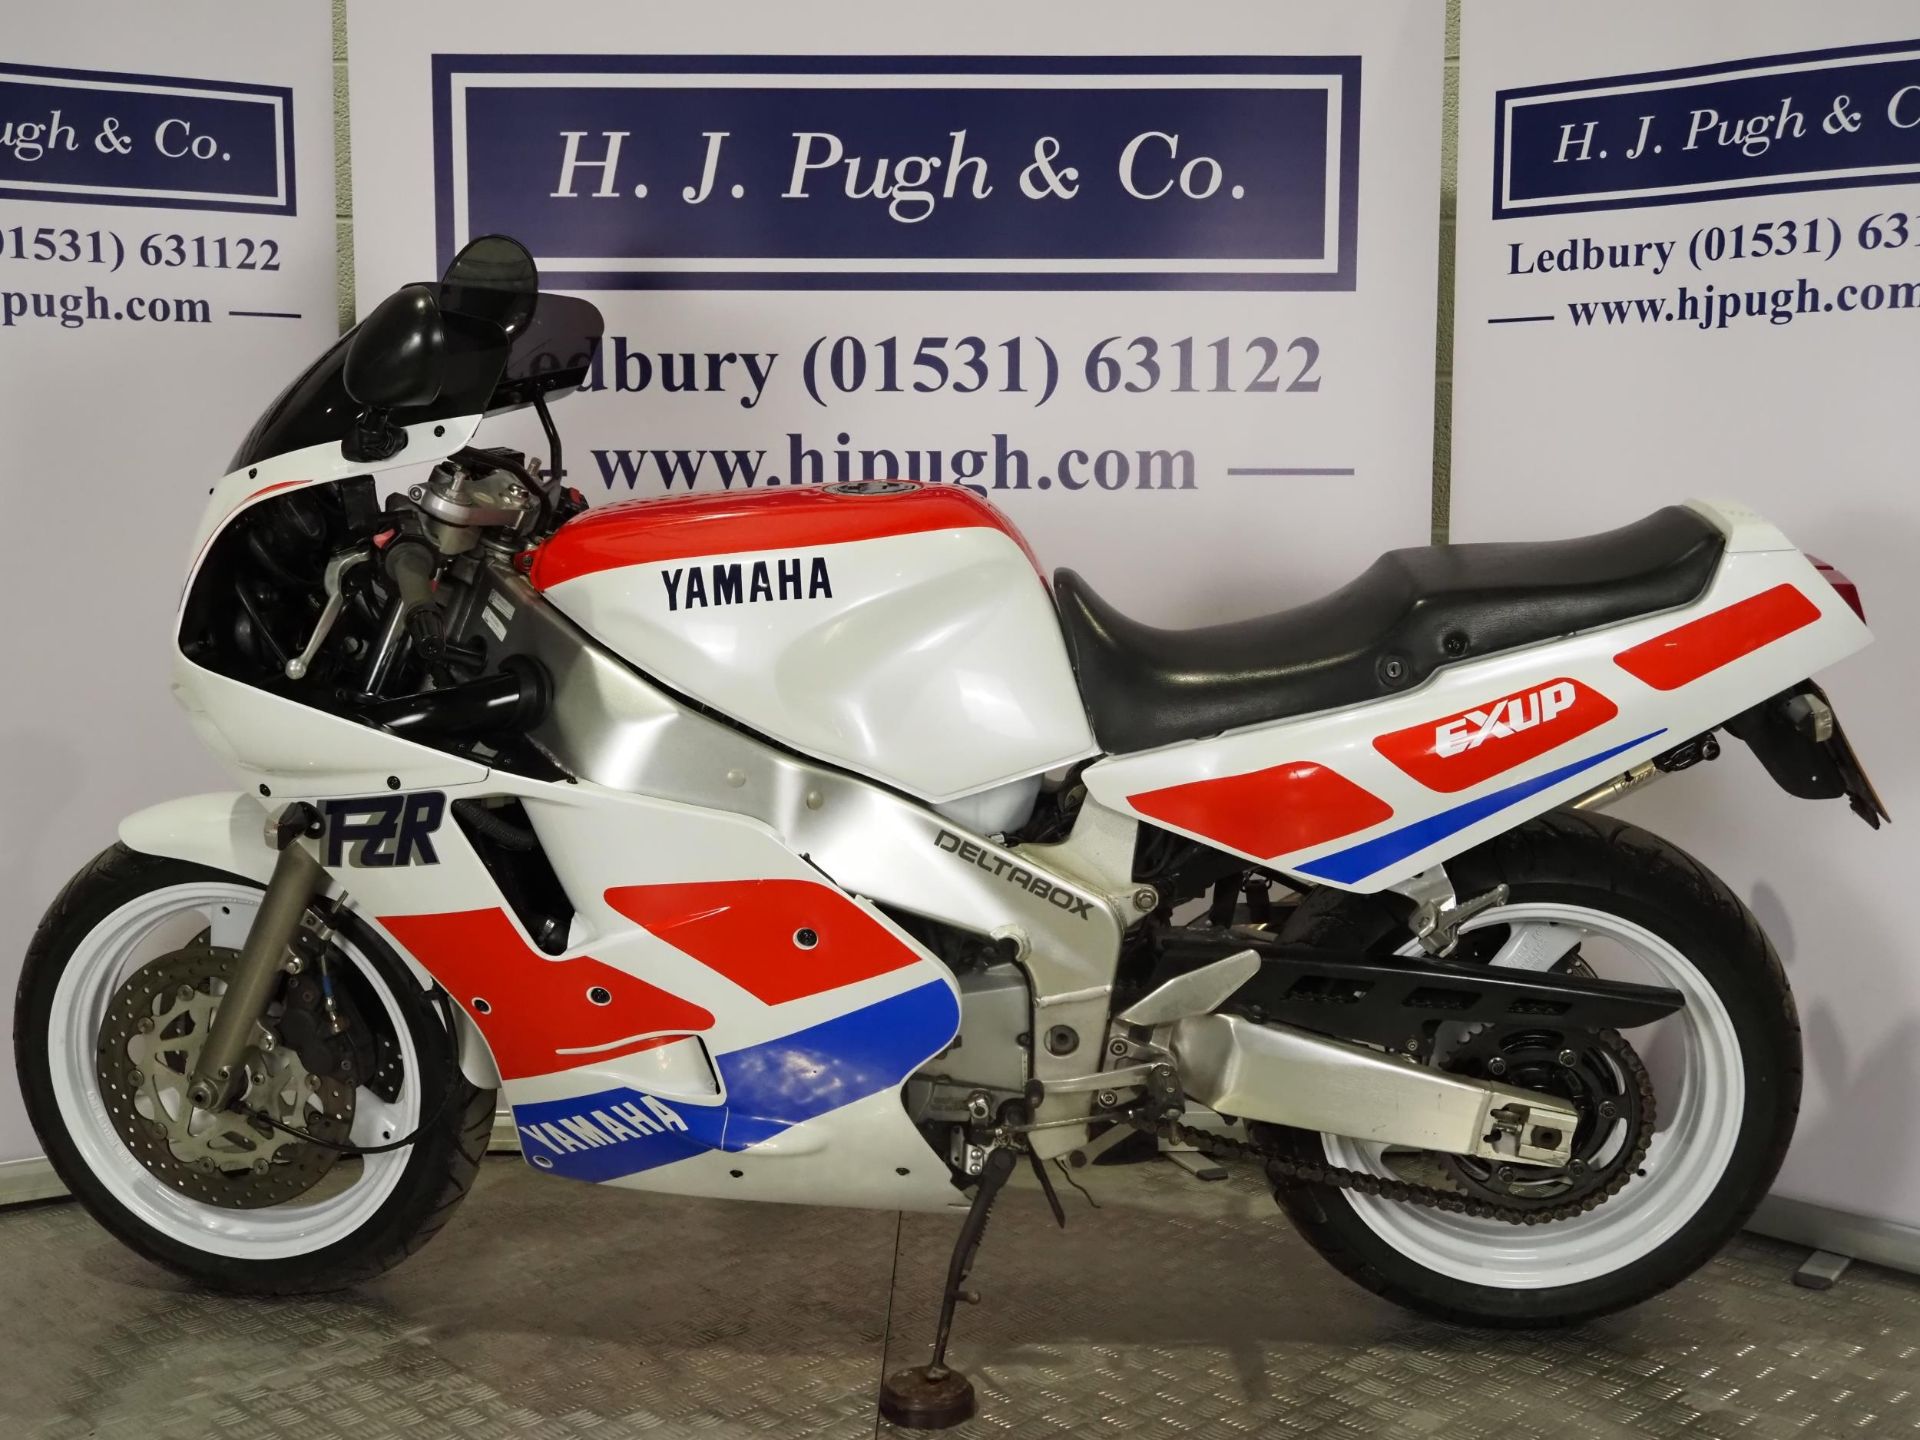 Yamaha FZR1000 exup motorcycle. 1990. 1002cc Runs and rides. Reg. H684 FLK. V5. Key - Image 7 of 7